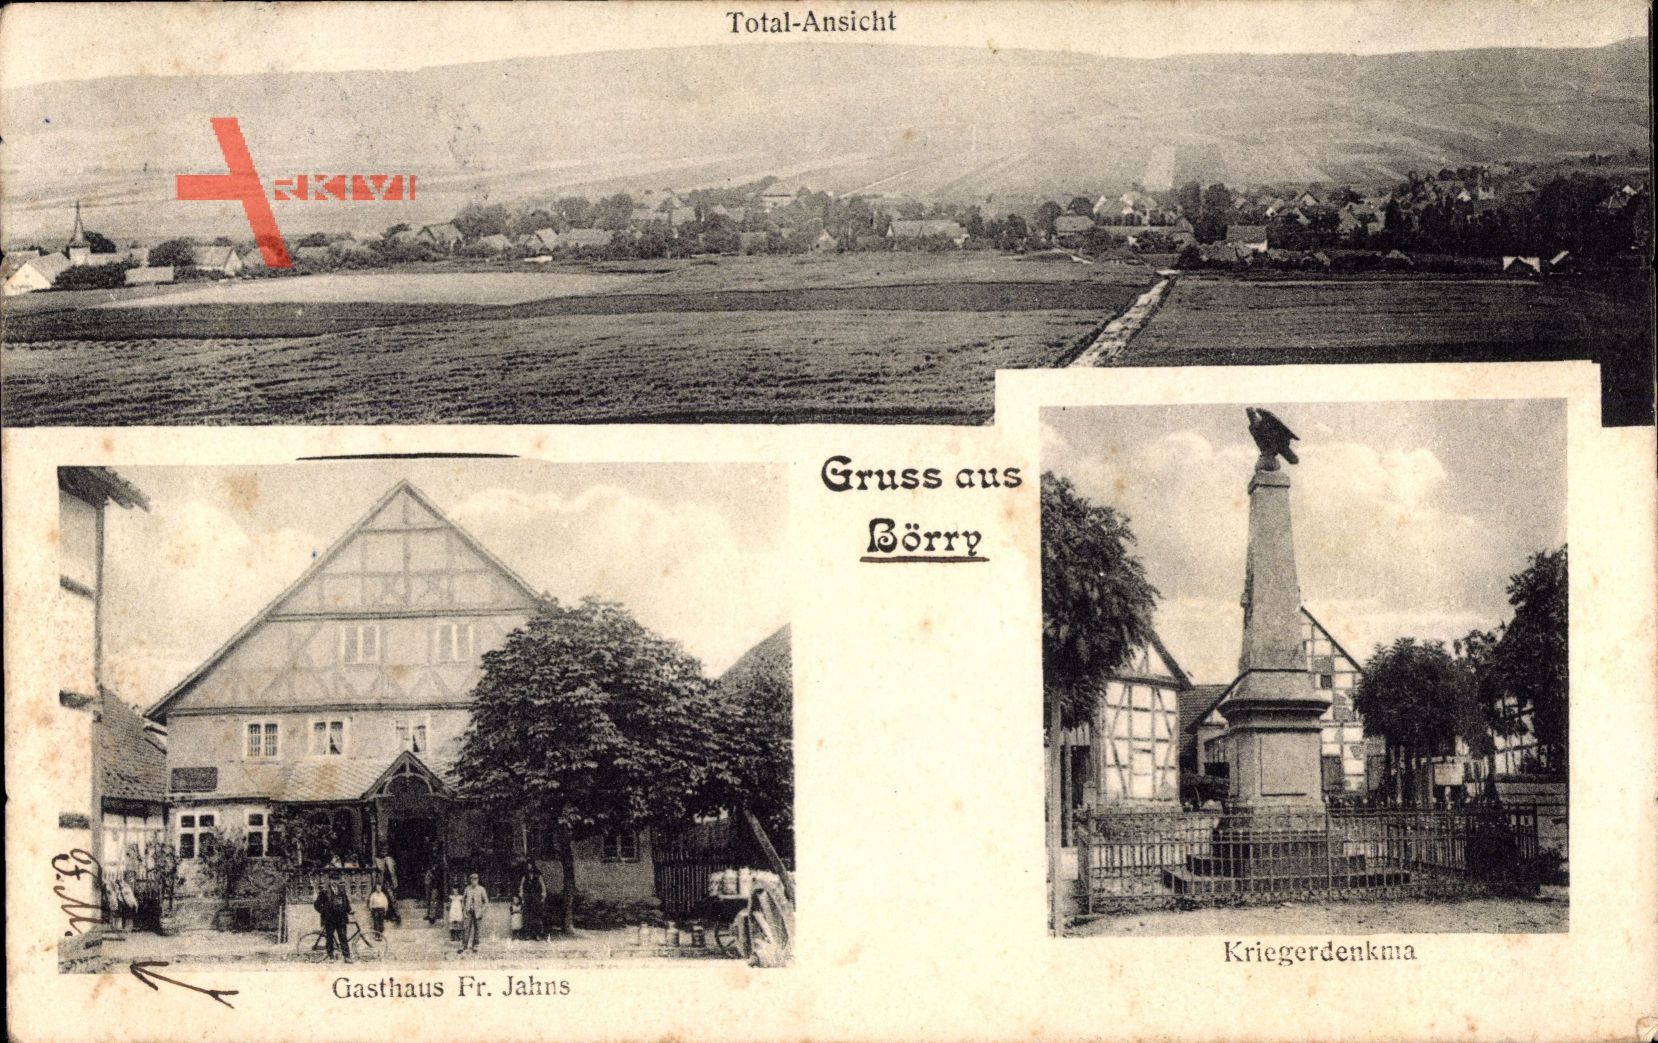 Börry Emmerthal, Totalansicht, Kriegerdenkmal, Gasthaus Fr. Jahns